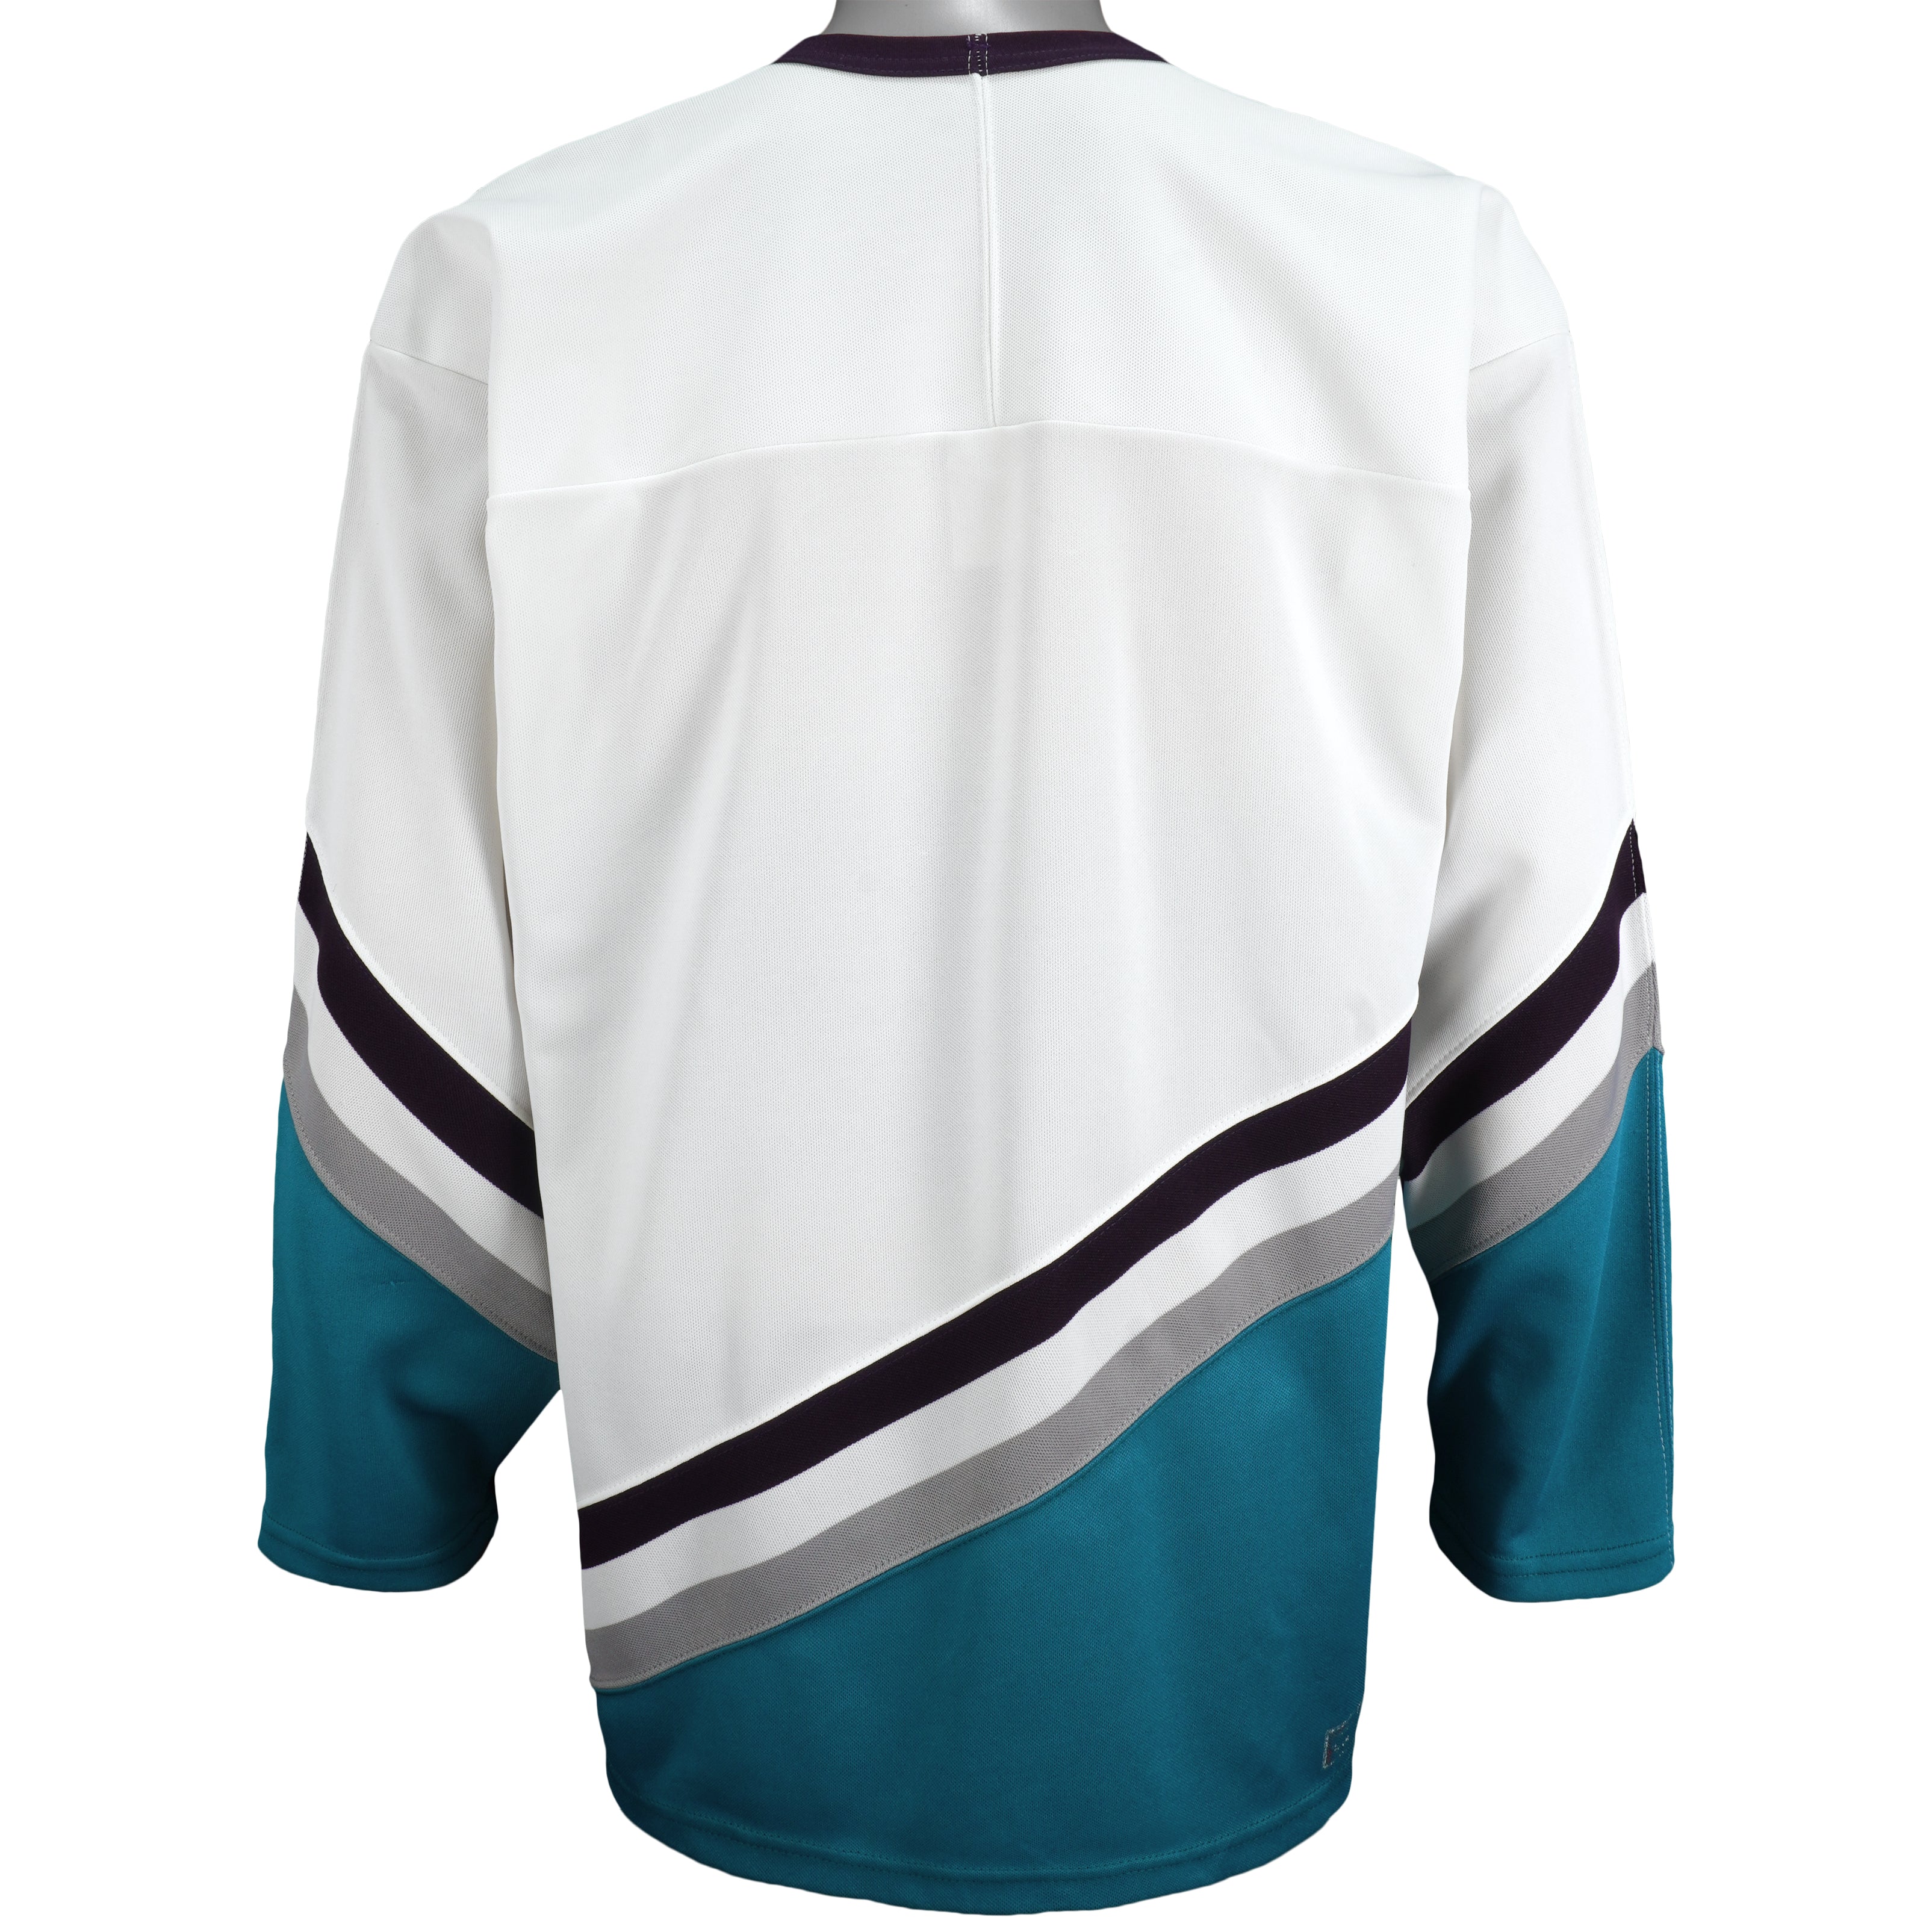 Vintage 90s Starter Anaheim Mighty Ducks Nhl Hockey Jersey Size